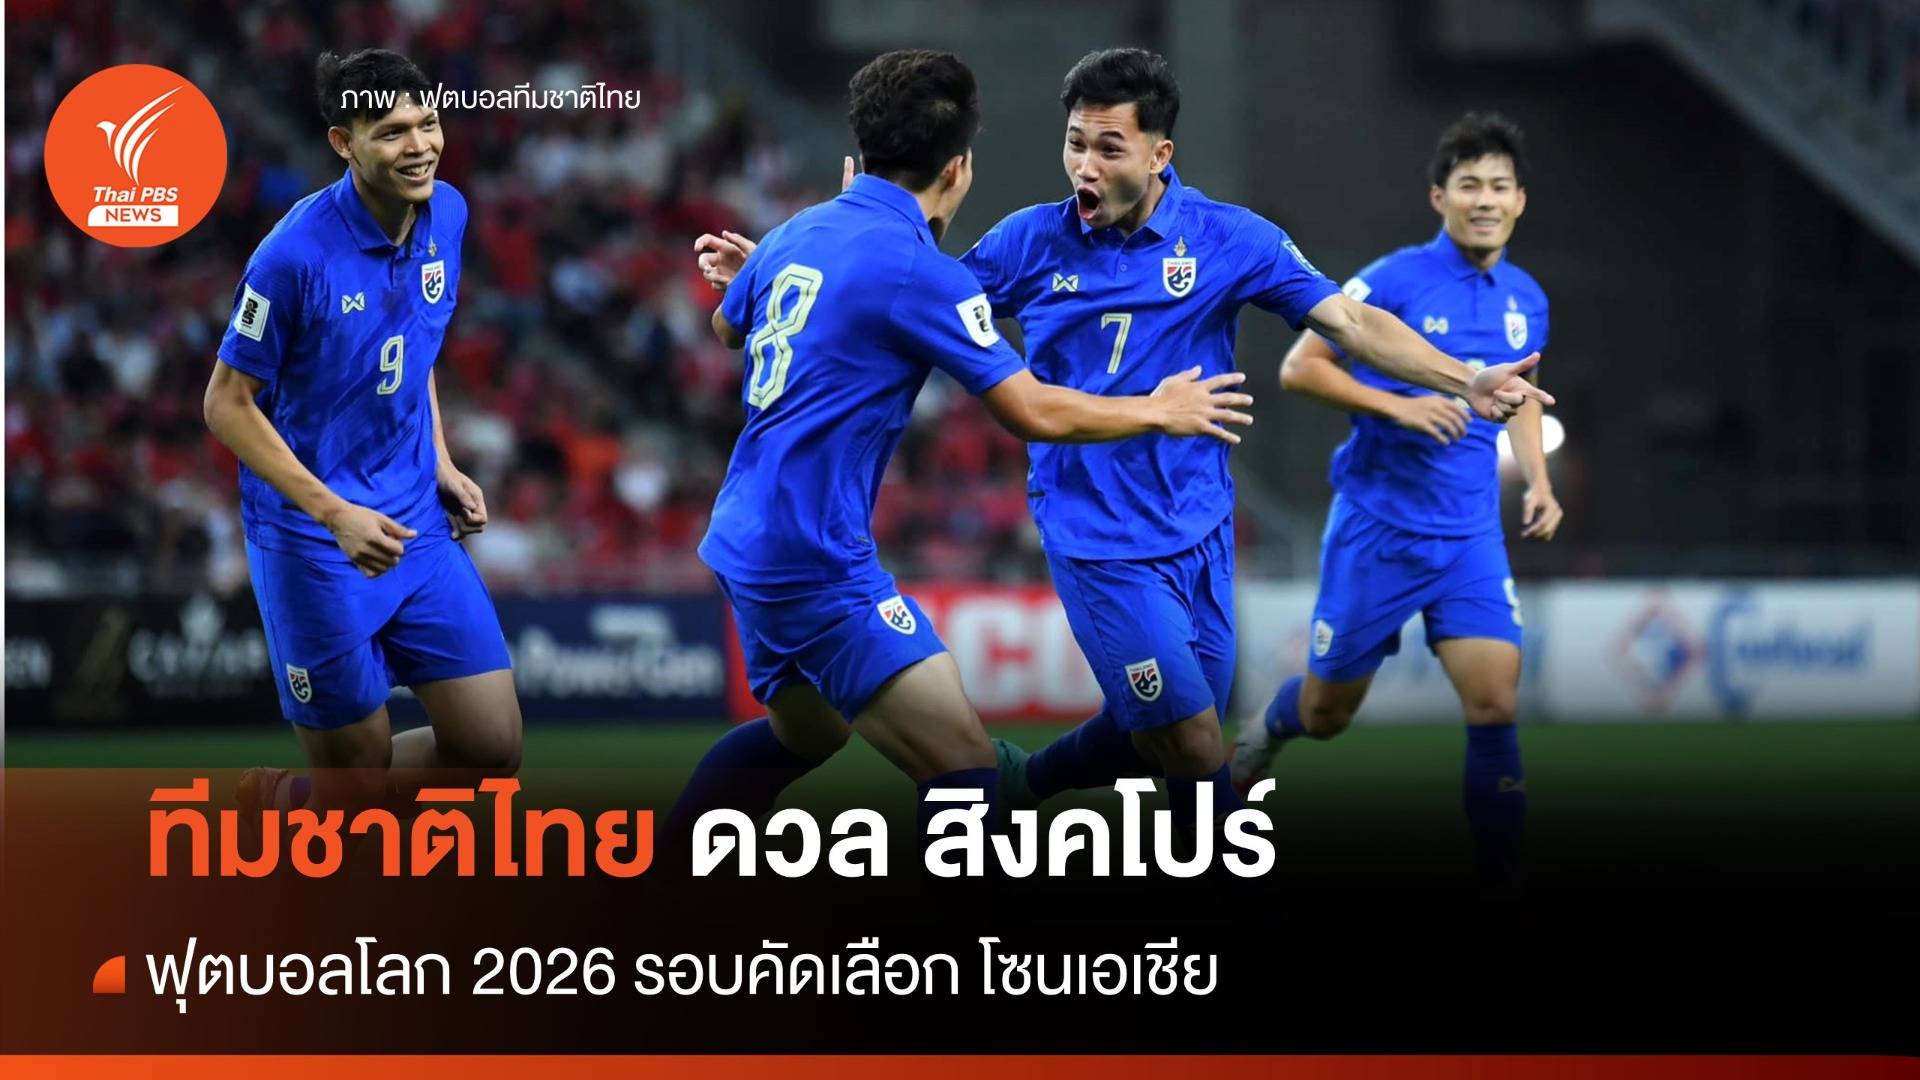 บอลไทย ชนะ สิงคโปร์ 3-1 ฟุตบอลโลก 2026 รอบคัดเลือก โซนเอเชีย นัด 2